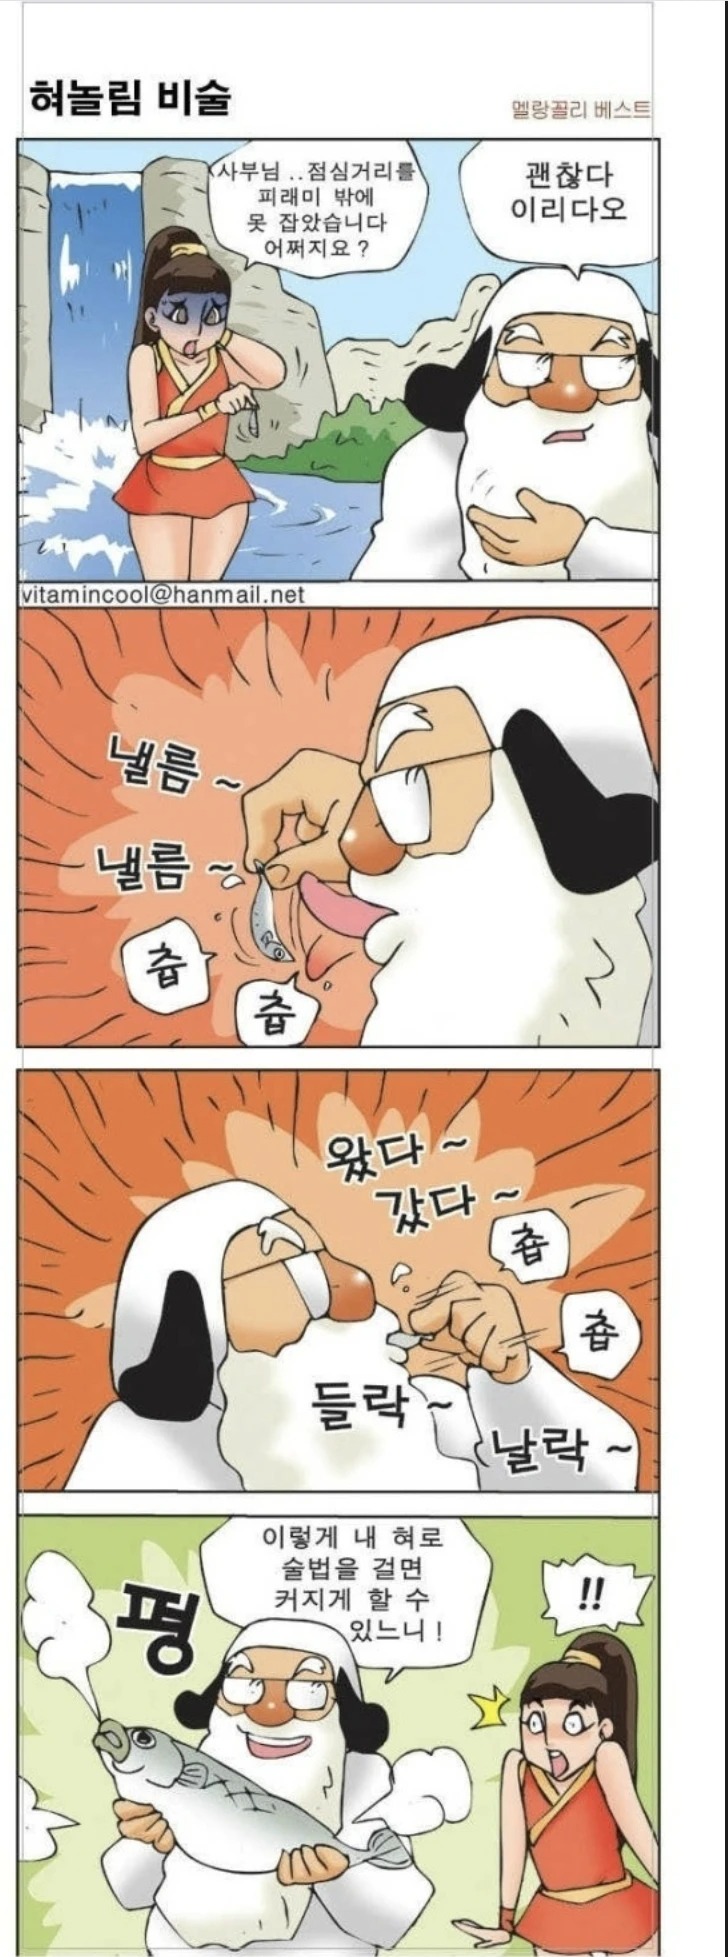 ㅇㅎ) 혀놀림이 남다른 사부님.manhwa